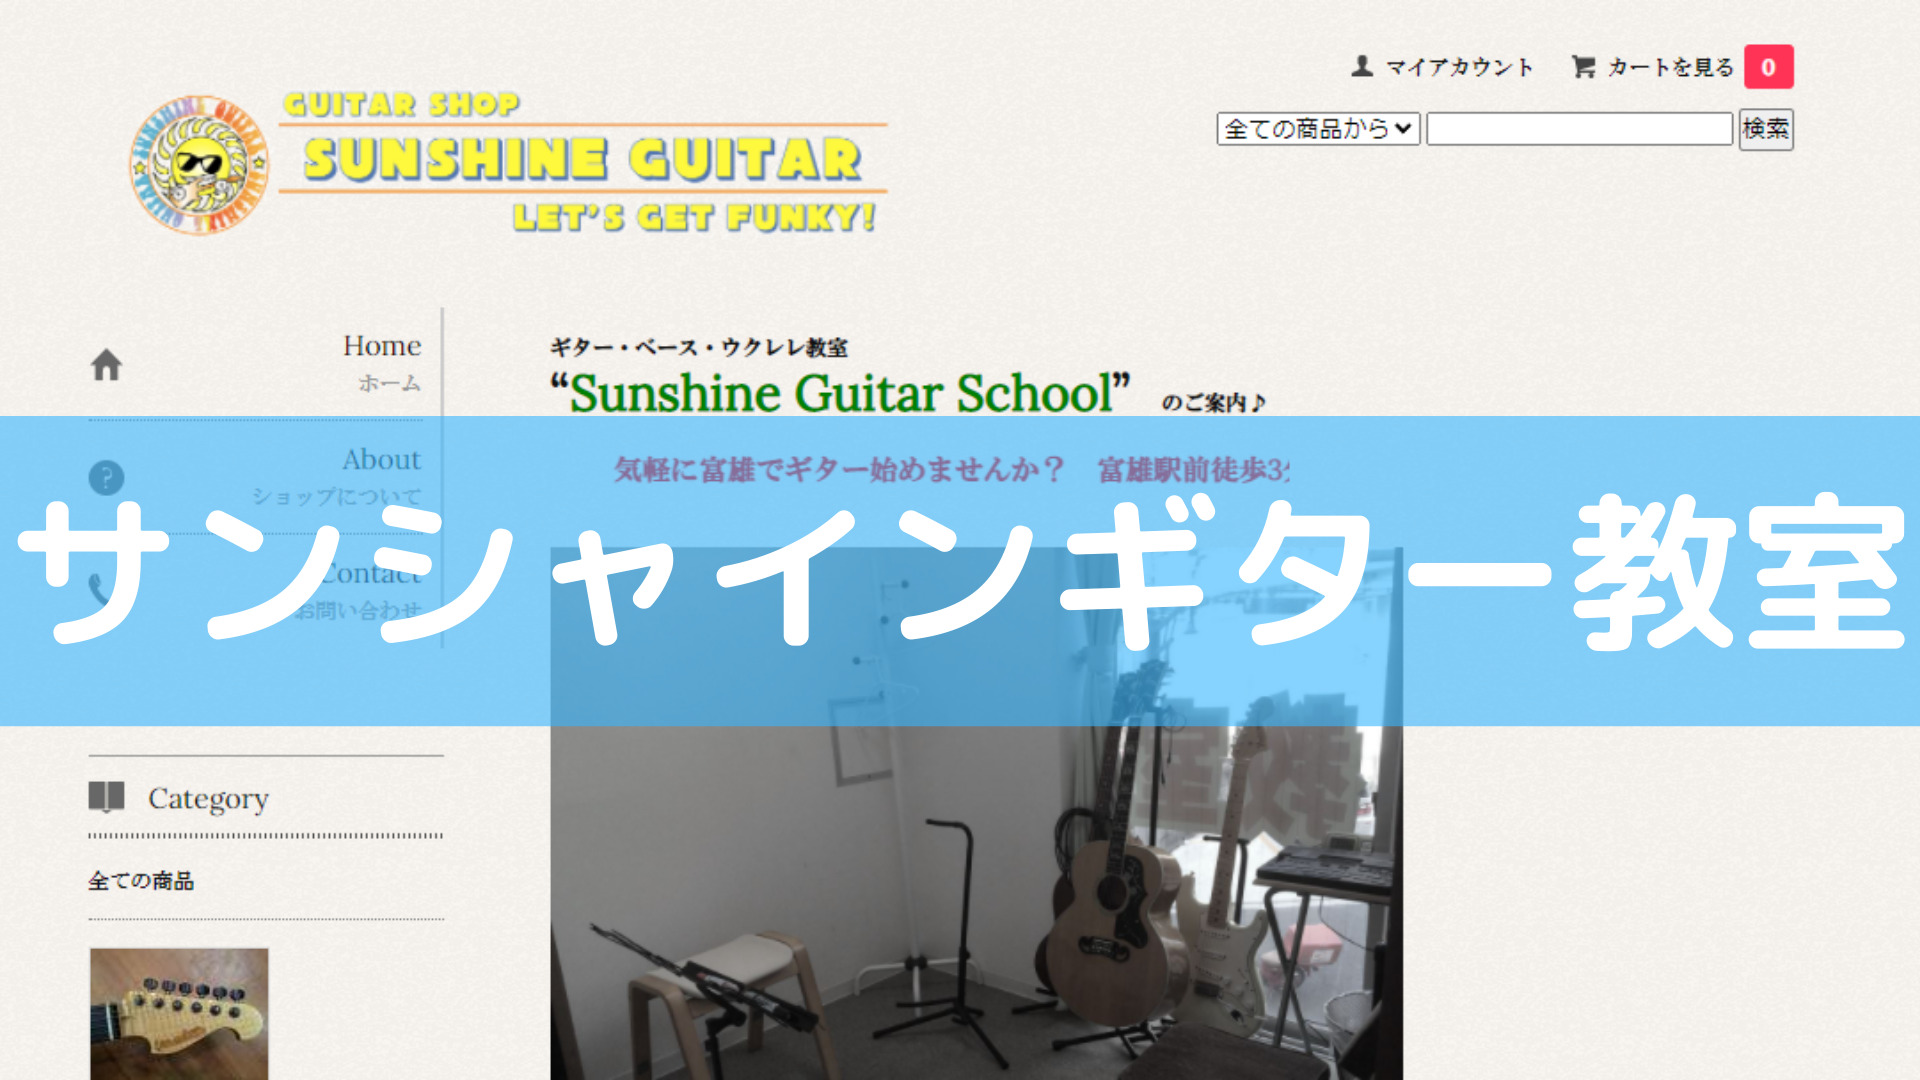 <第4位> 年1回の発表会ライブあり！奈良にある教室で音楽を楽しみながらギタースキルを磨くことができる【サンシャインギター教室】